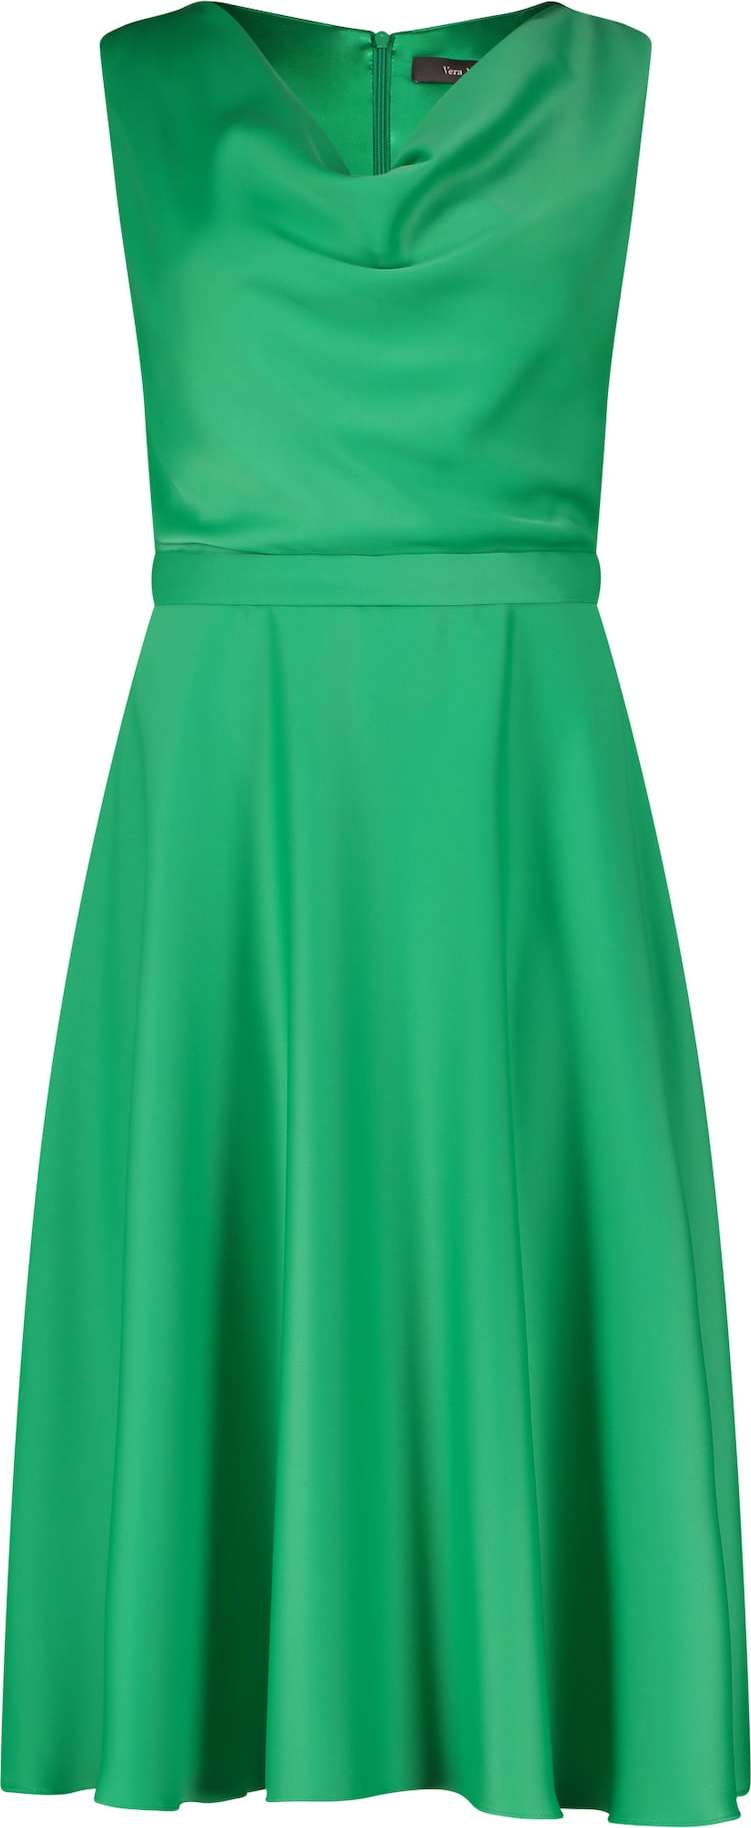 Koktejlové šaty Vera Mont trávově zelená